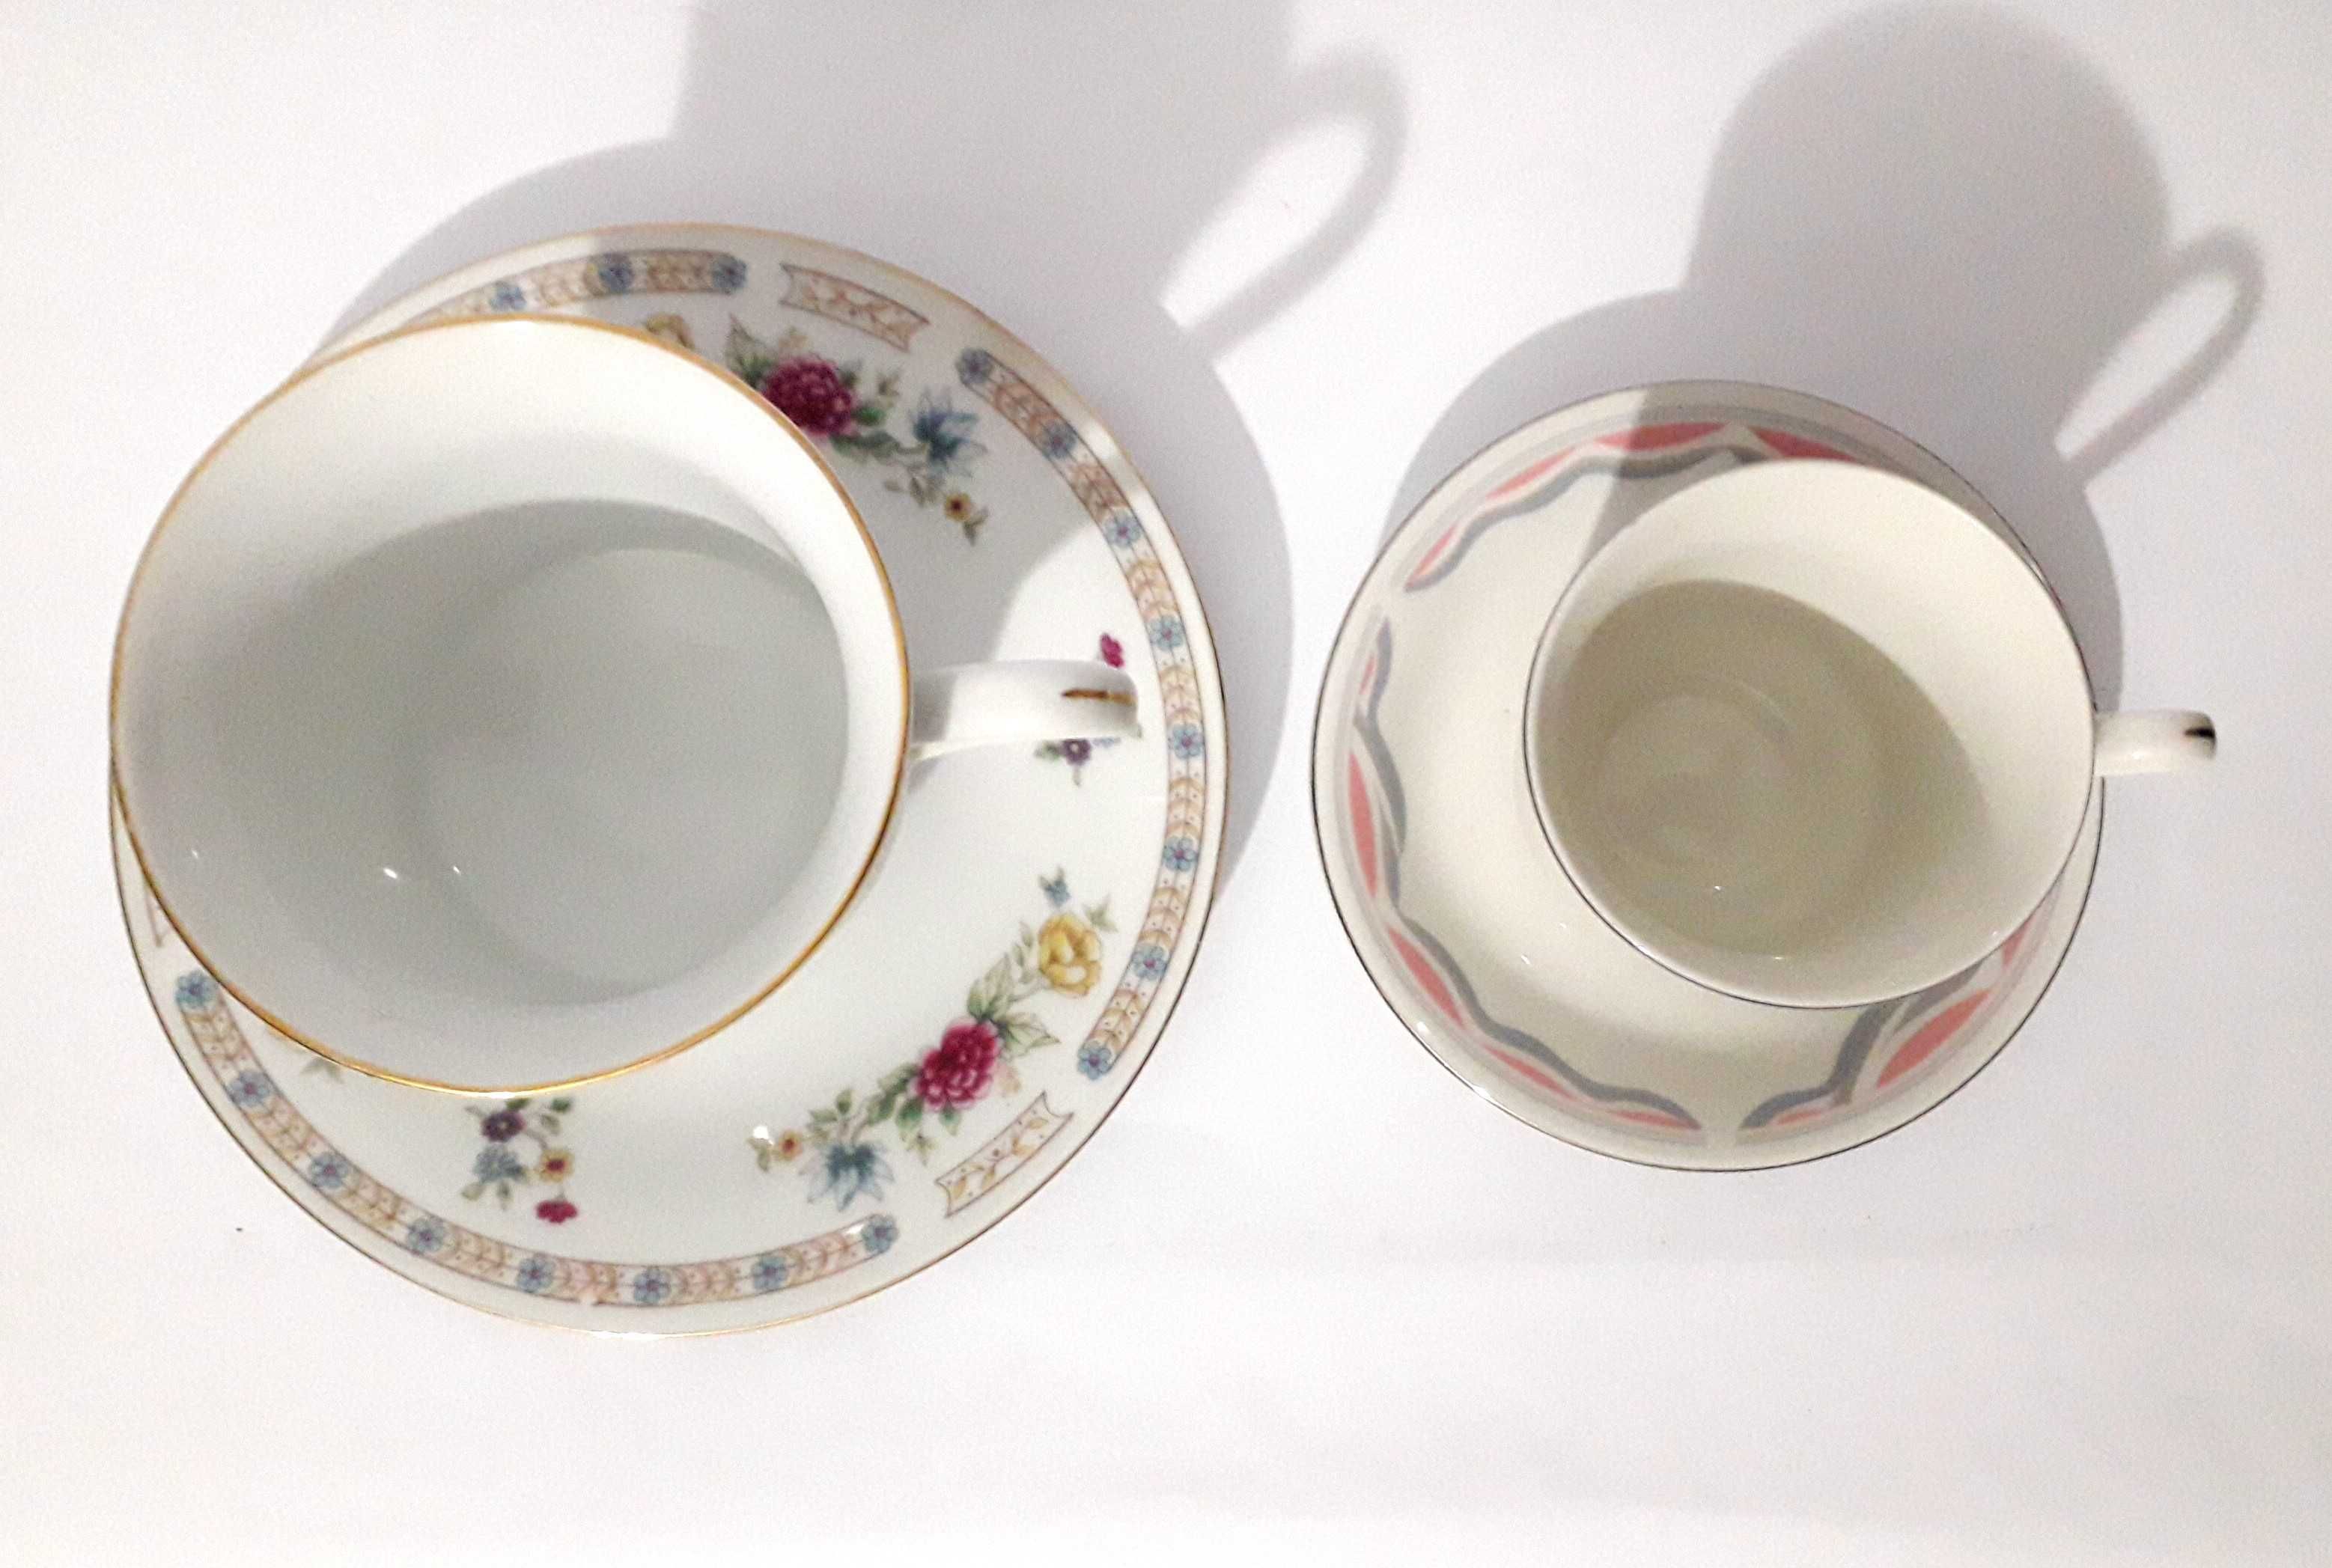 2 Chávenas de chá/café : Remington China / Fine Porcelain China